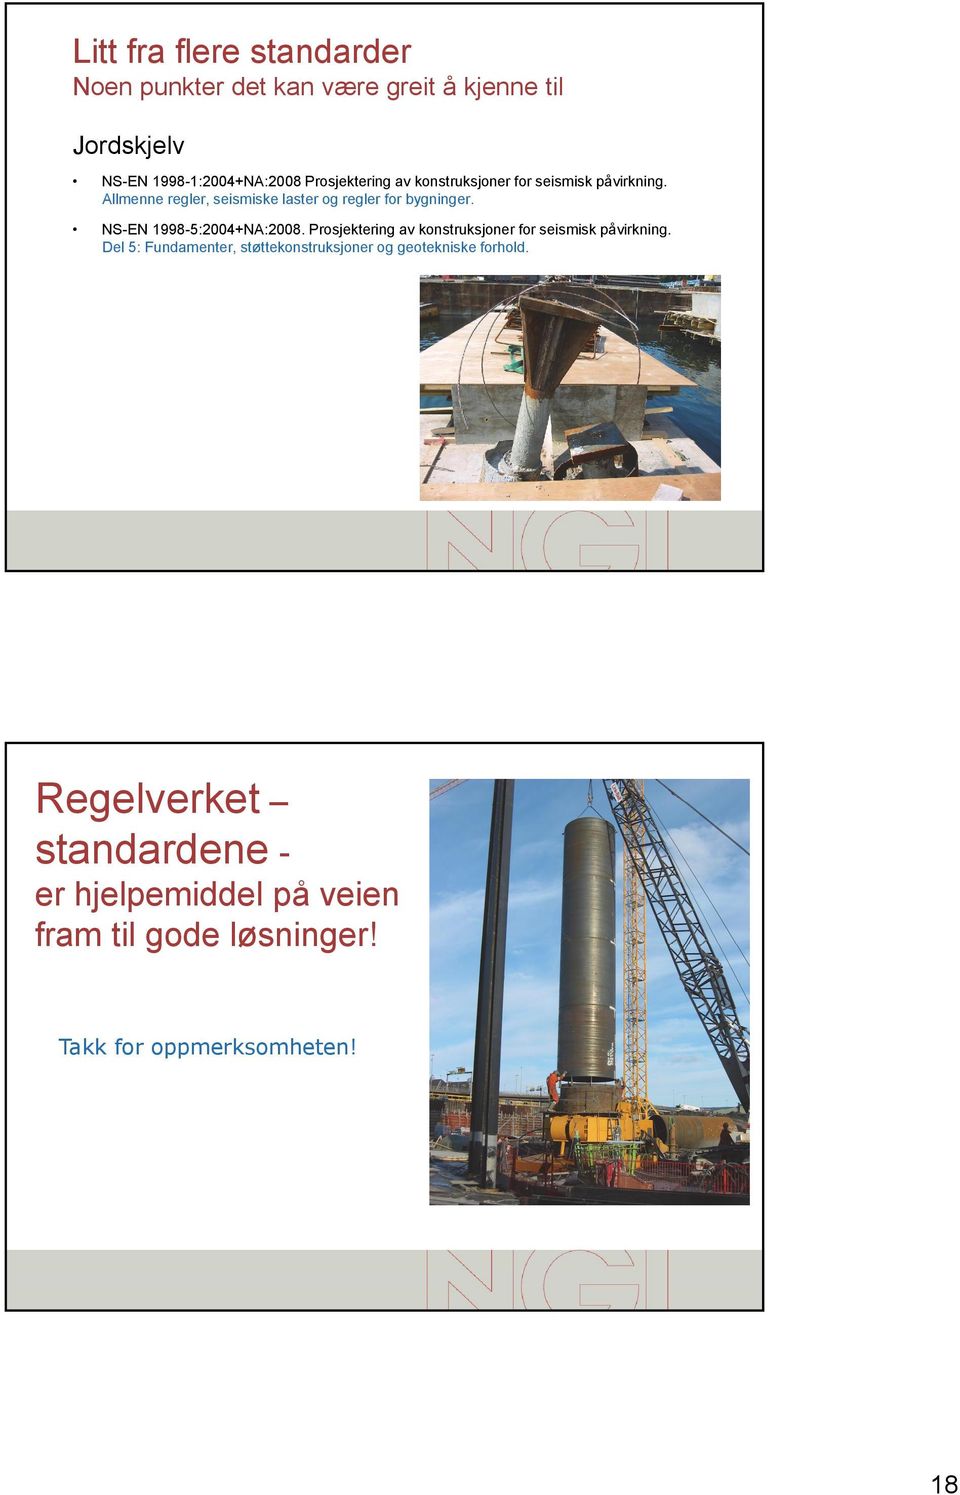 NS-EN 1998-5:2004+NA:2008. Prosjektering av konstruksjoner for seismisk påvirkning.